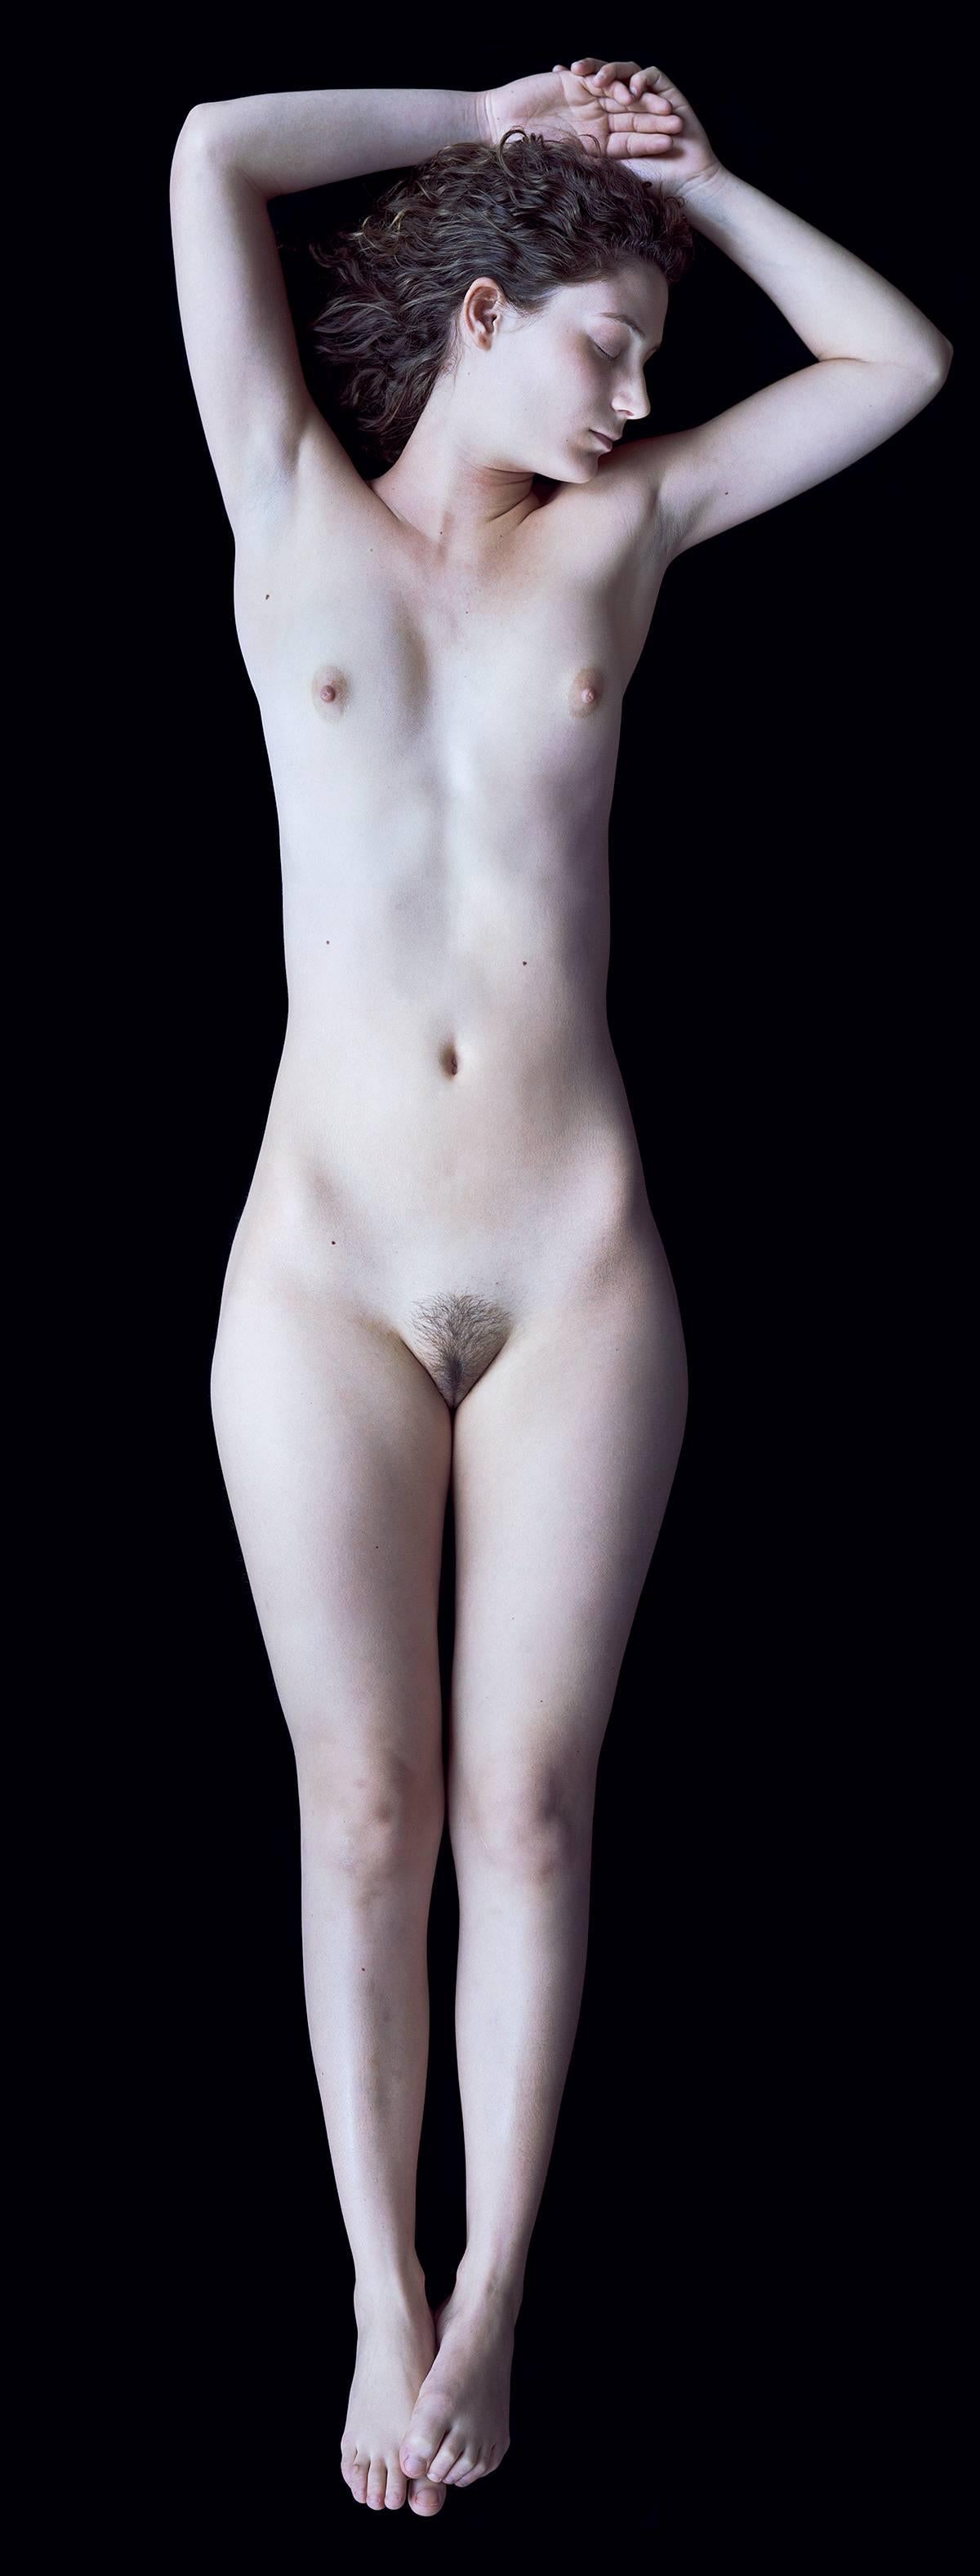 Carla van de Puttelaar Nude Photograph - 2008_28 – The Cranach Series